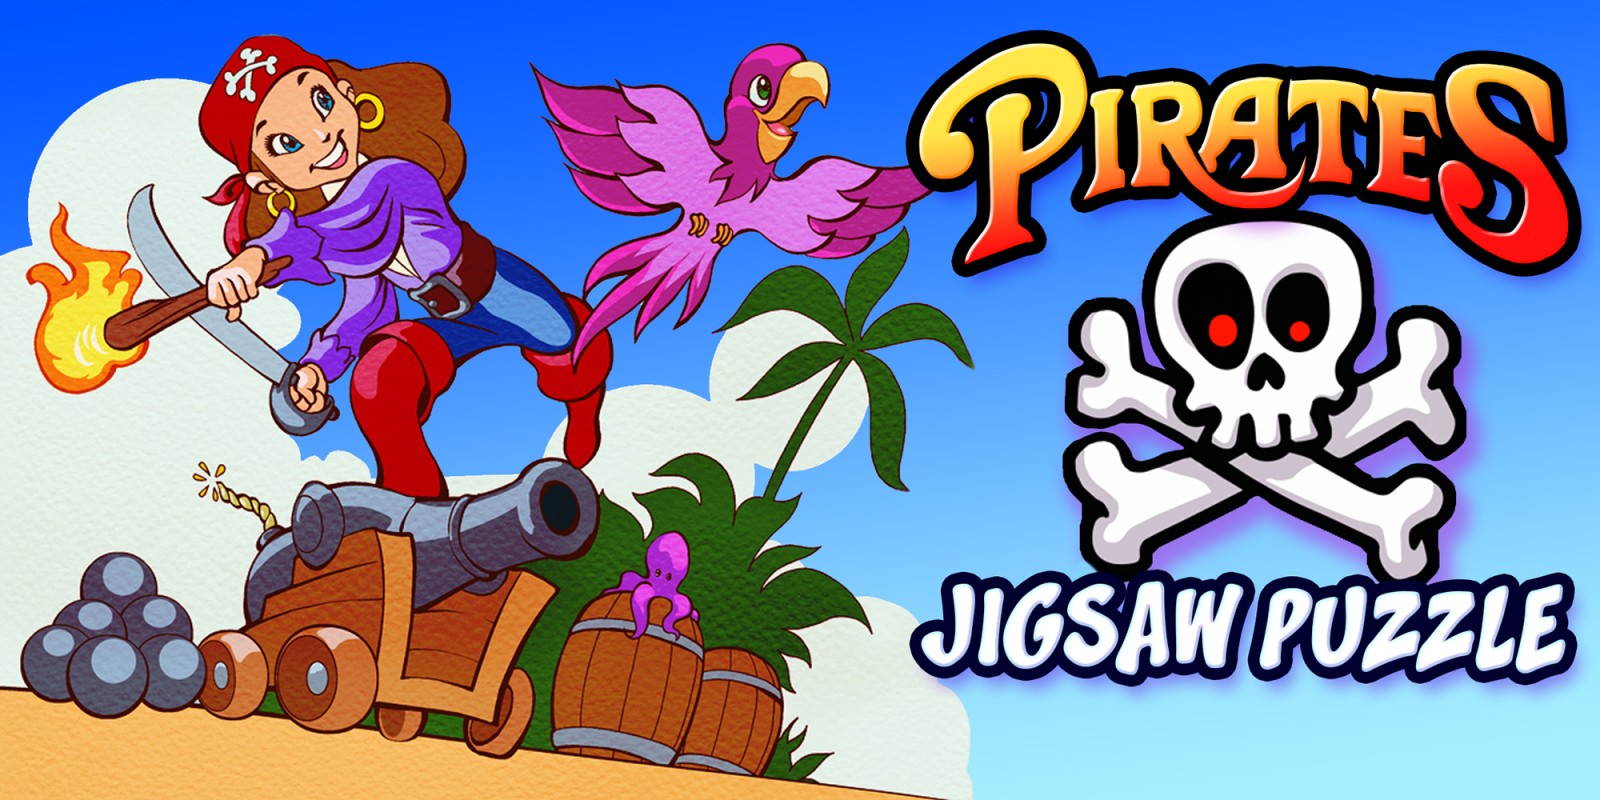 Pirates Jigsaw Puzzle - piraten legpuzzel puzzel onderwijs avontuur leren kinderen puzzels spelletjes voor kinderen en peuters